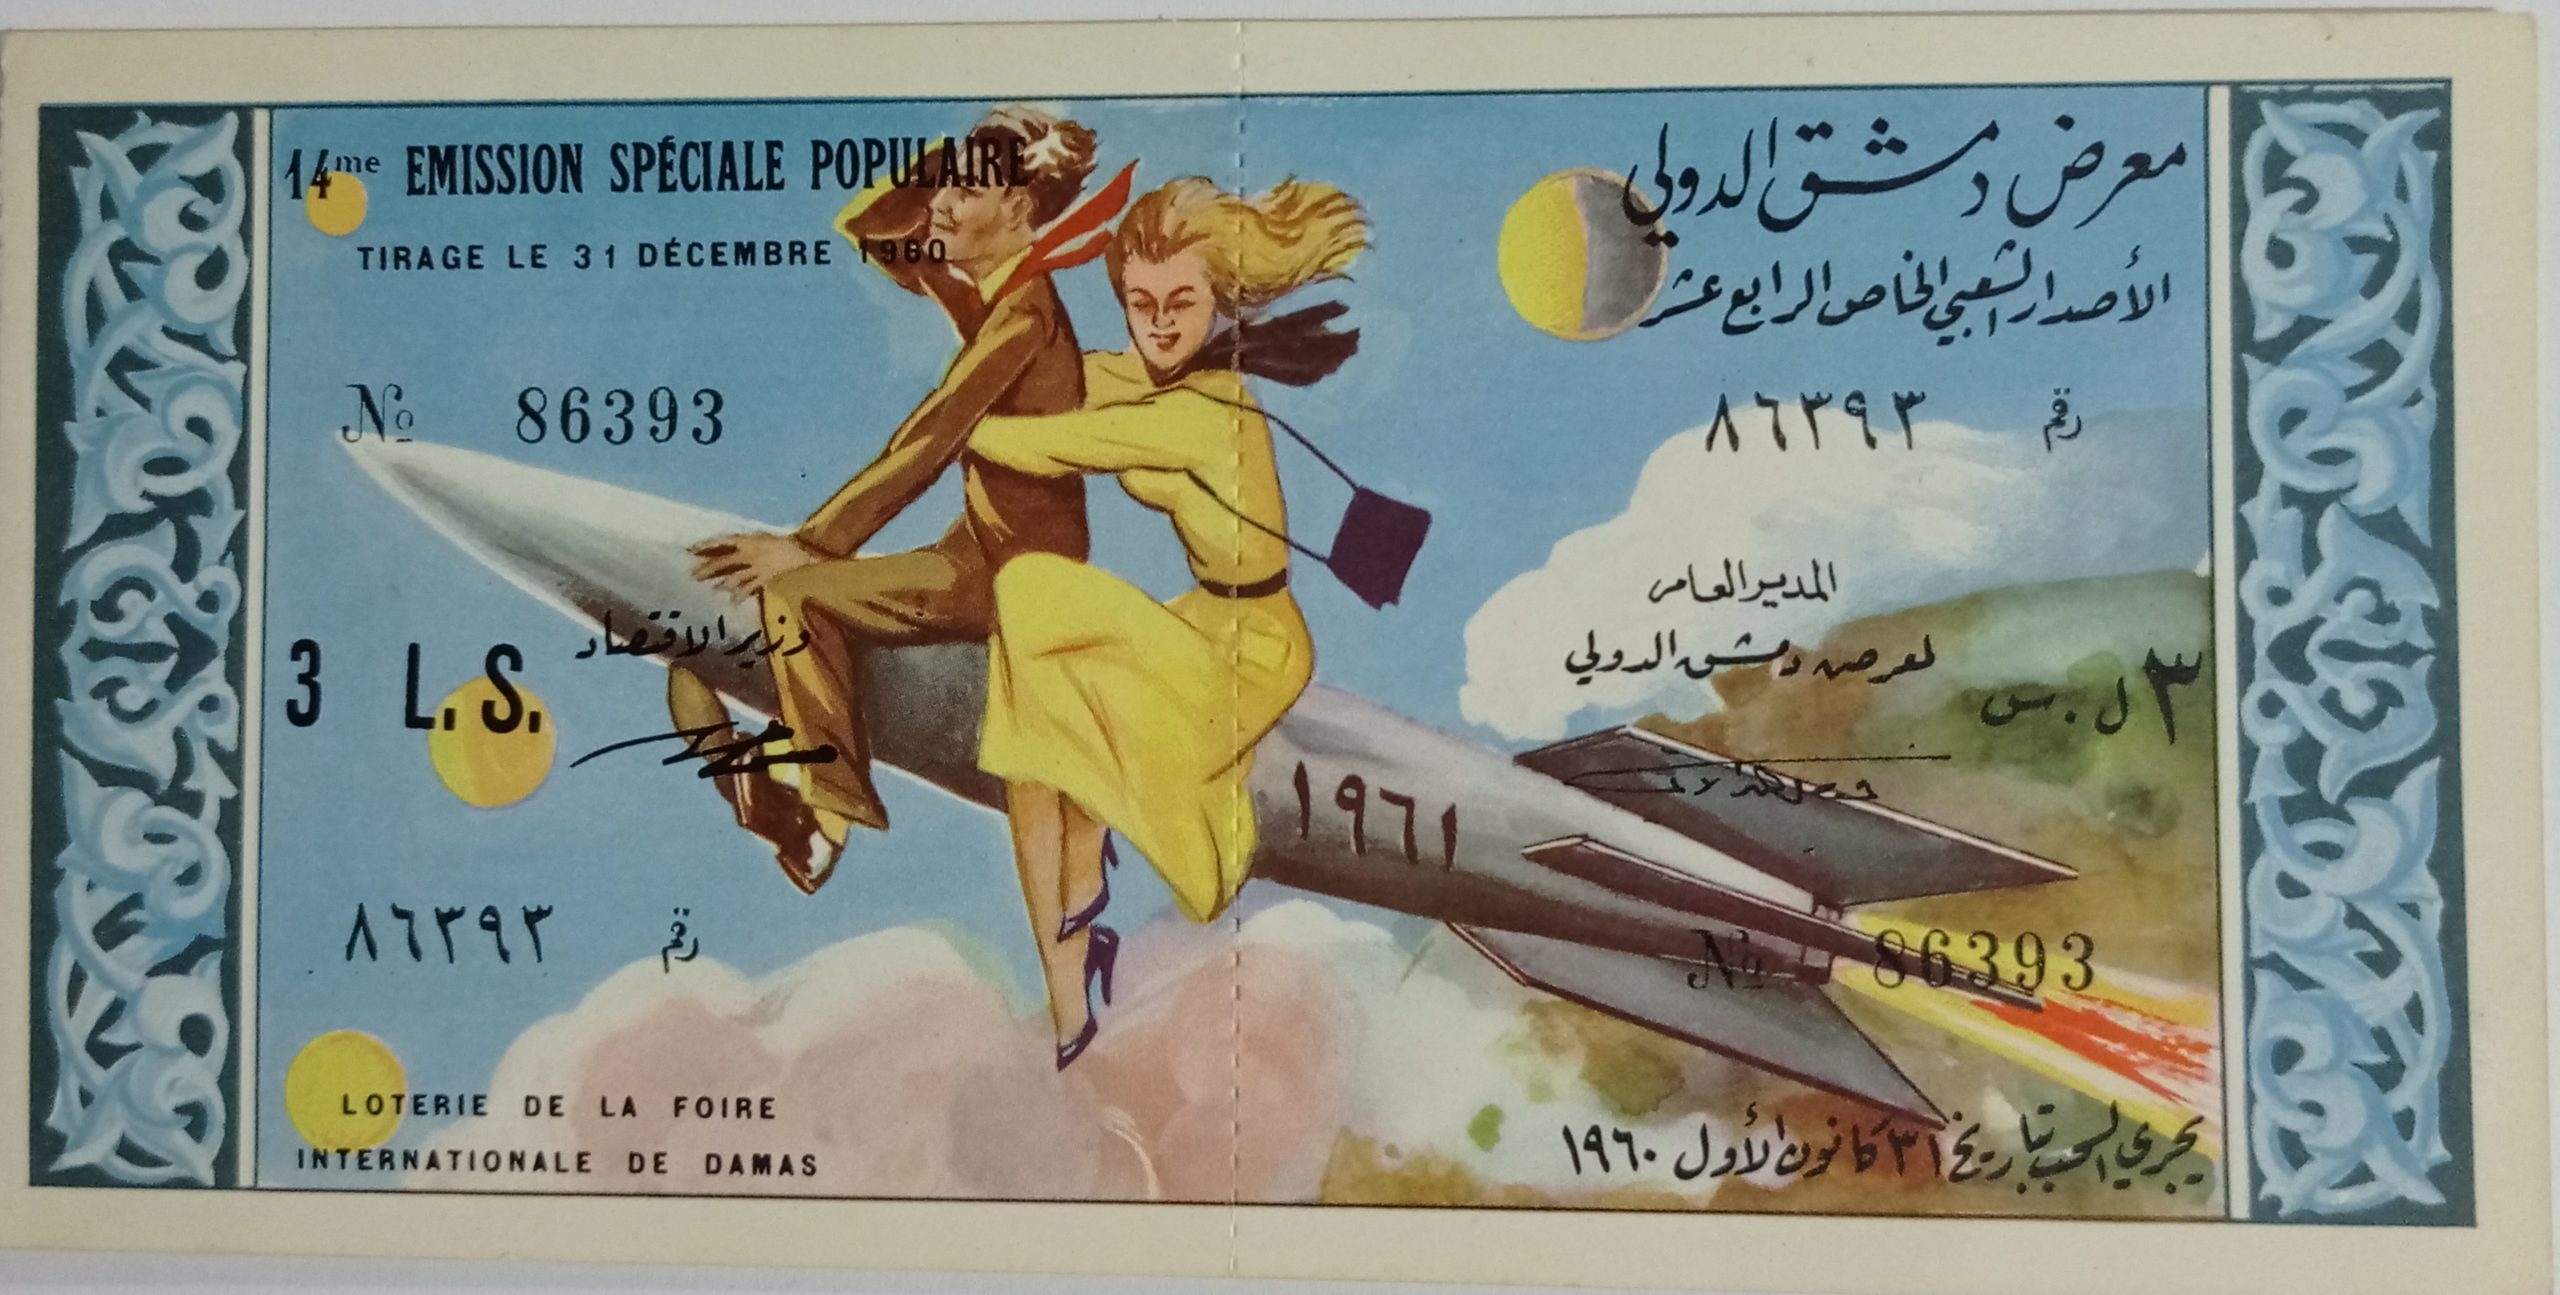 التاريخ السوري المعاصر - يانصيب معرض دمشق الدولي - الإصدار الشعبي الخاص الرابع عشر عام 1960